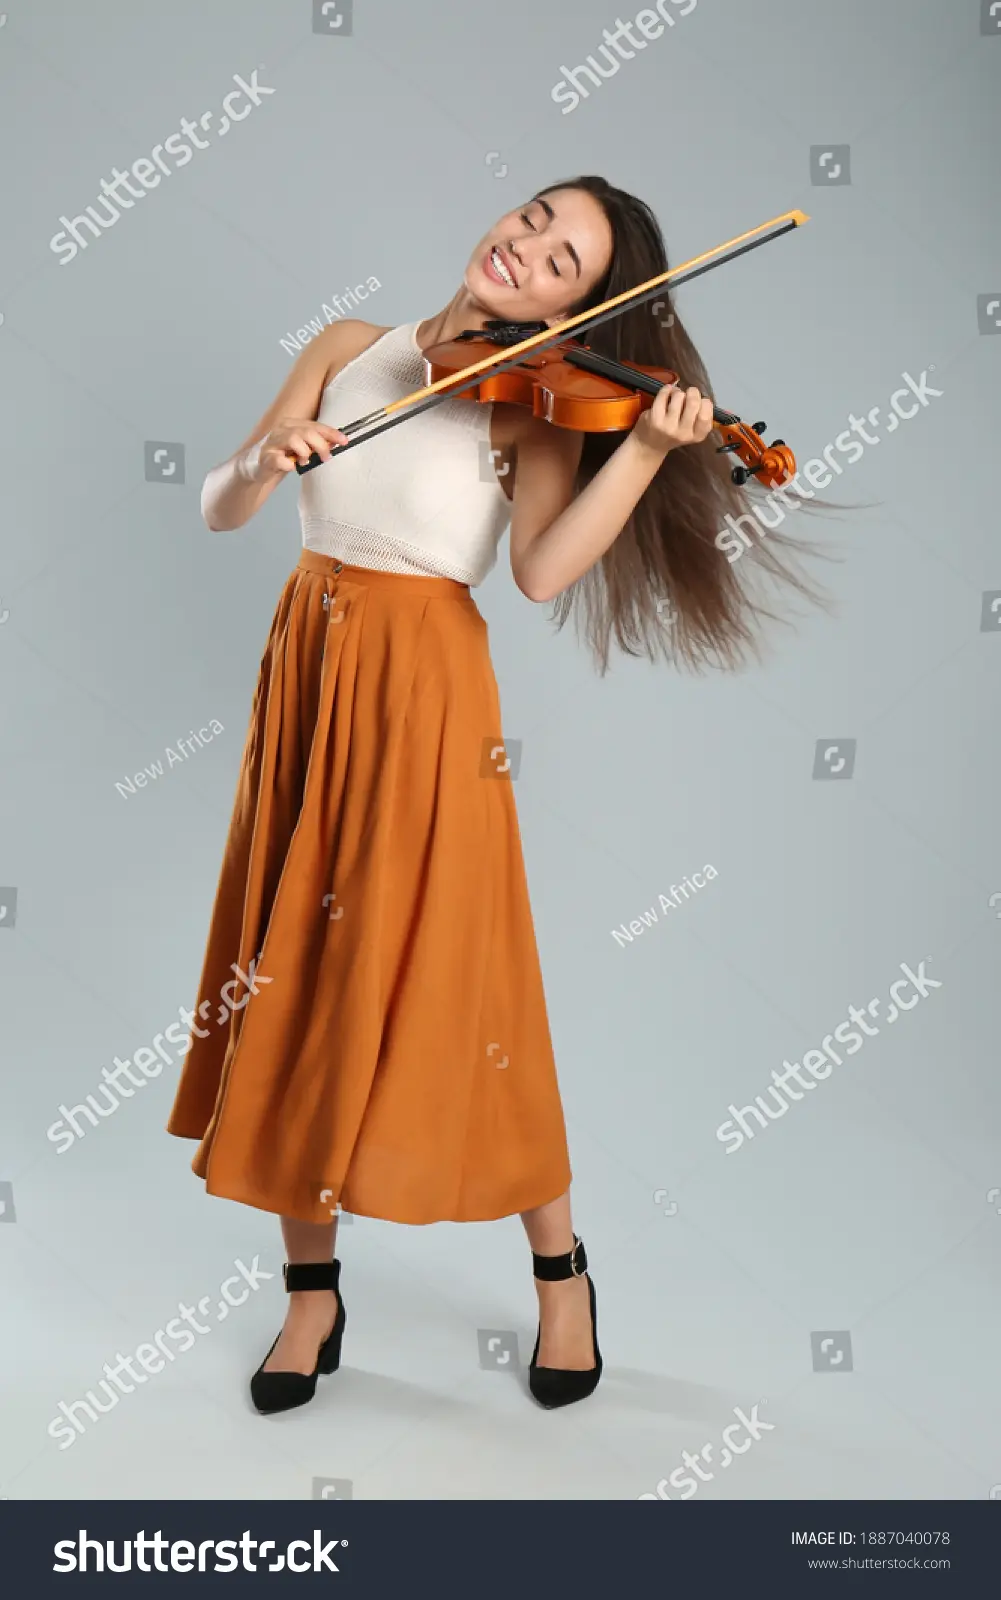 ella está estudiando el violin en inglés - Cómo se dice estudiando